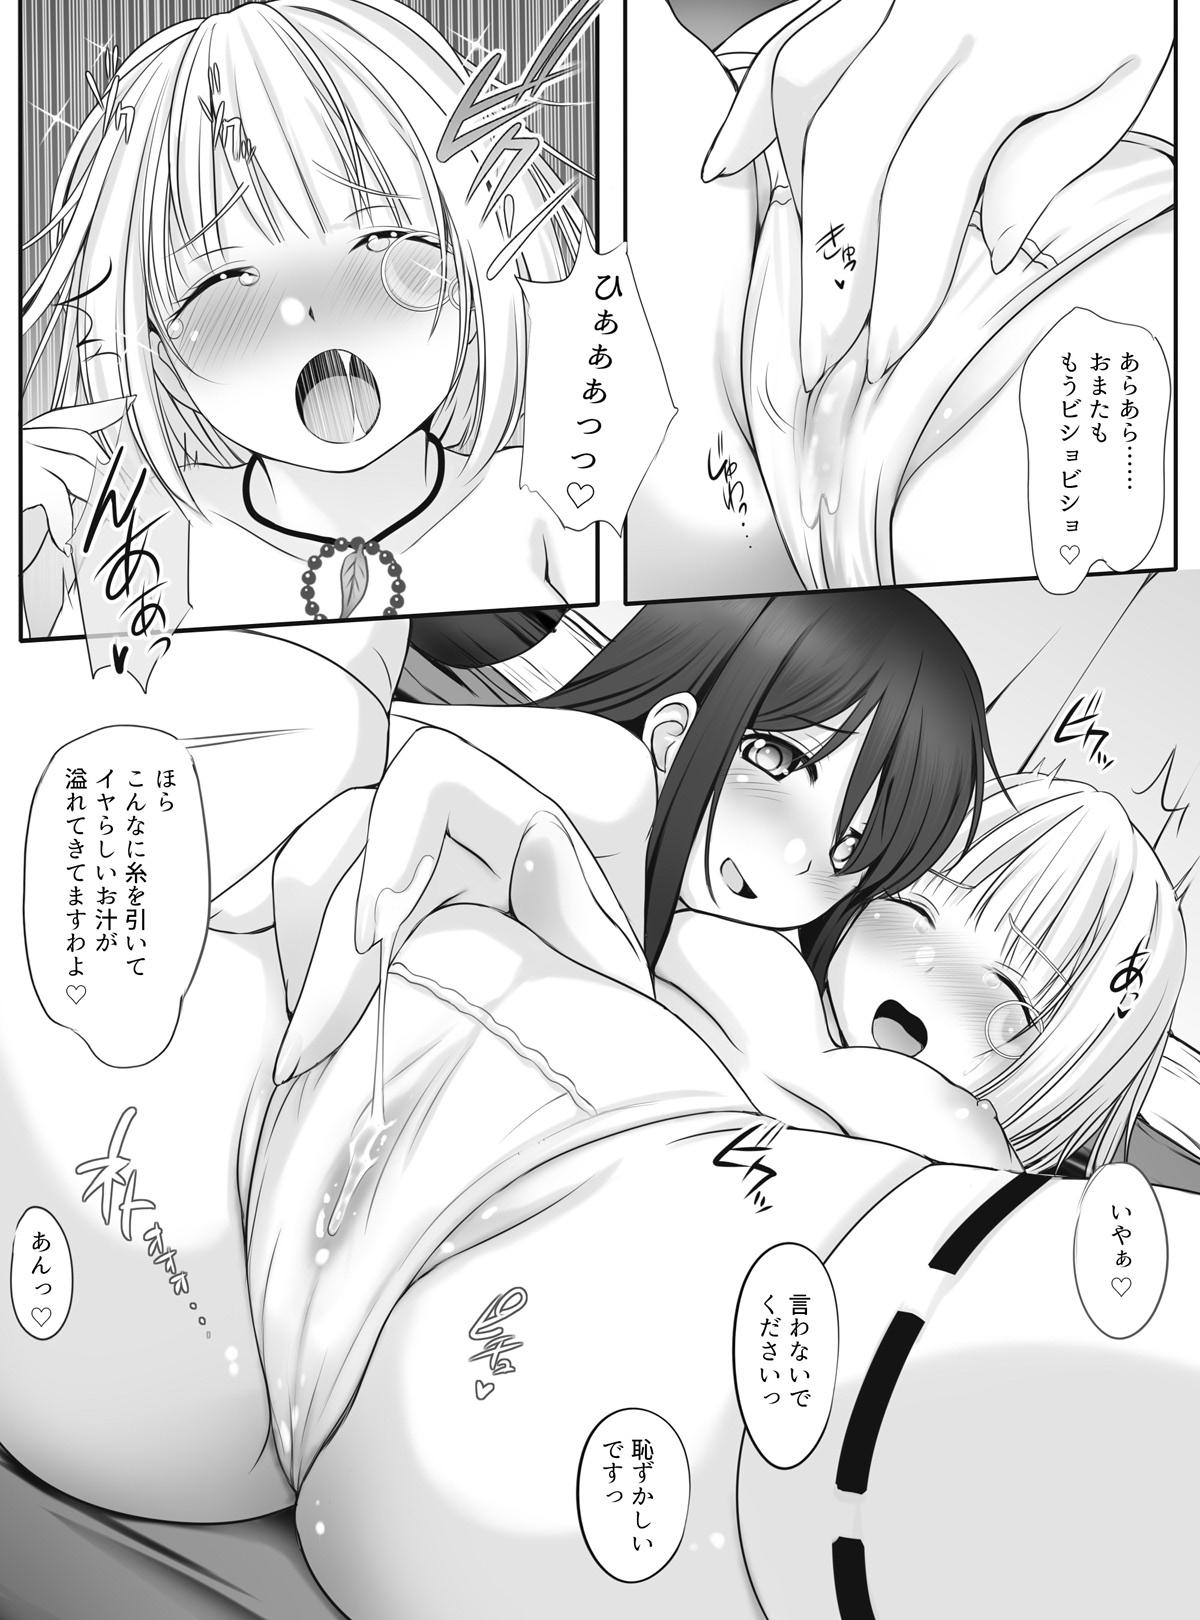 Sub Otome Ranman - Himitsu no Ochakai - Sengoku otome Interracial Sex - Page 10